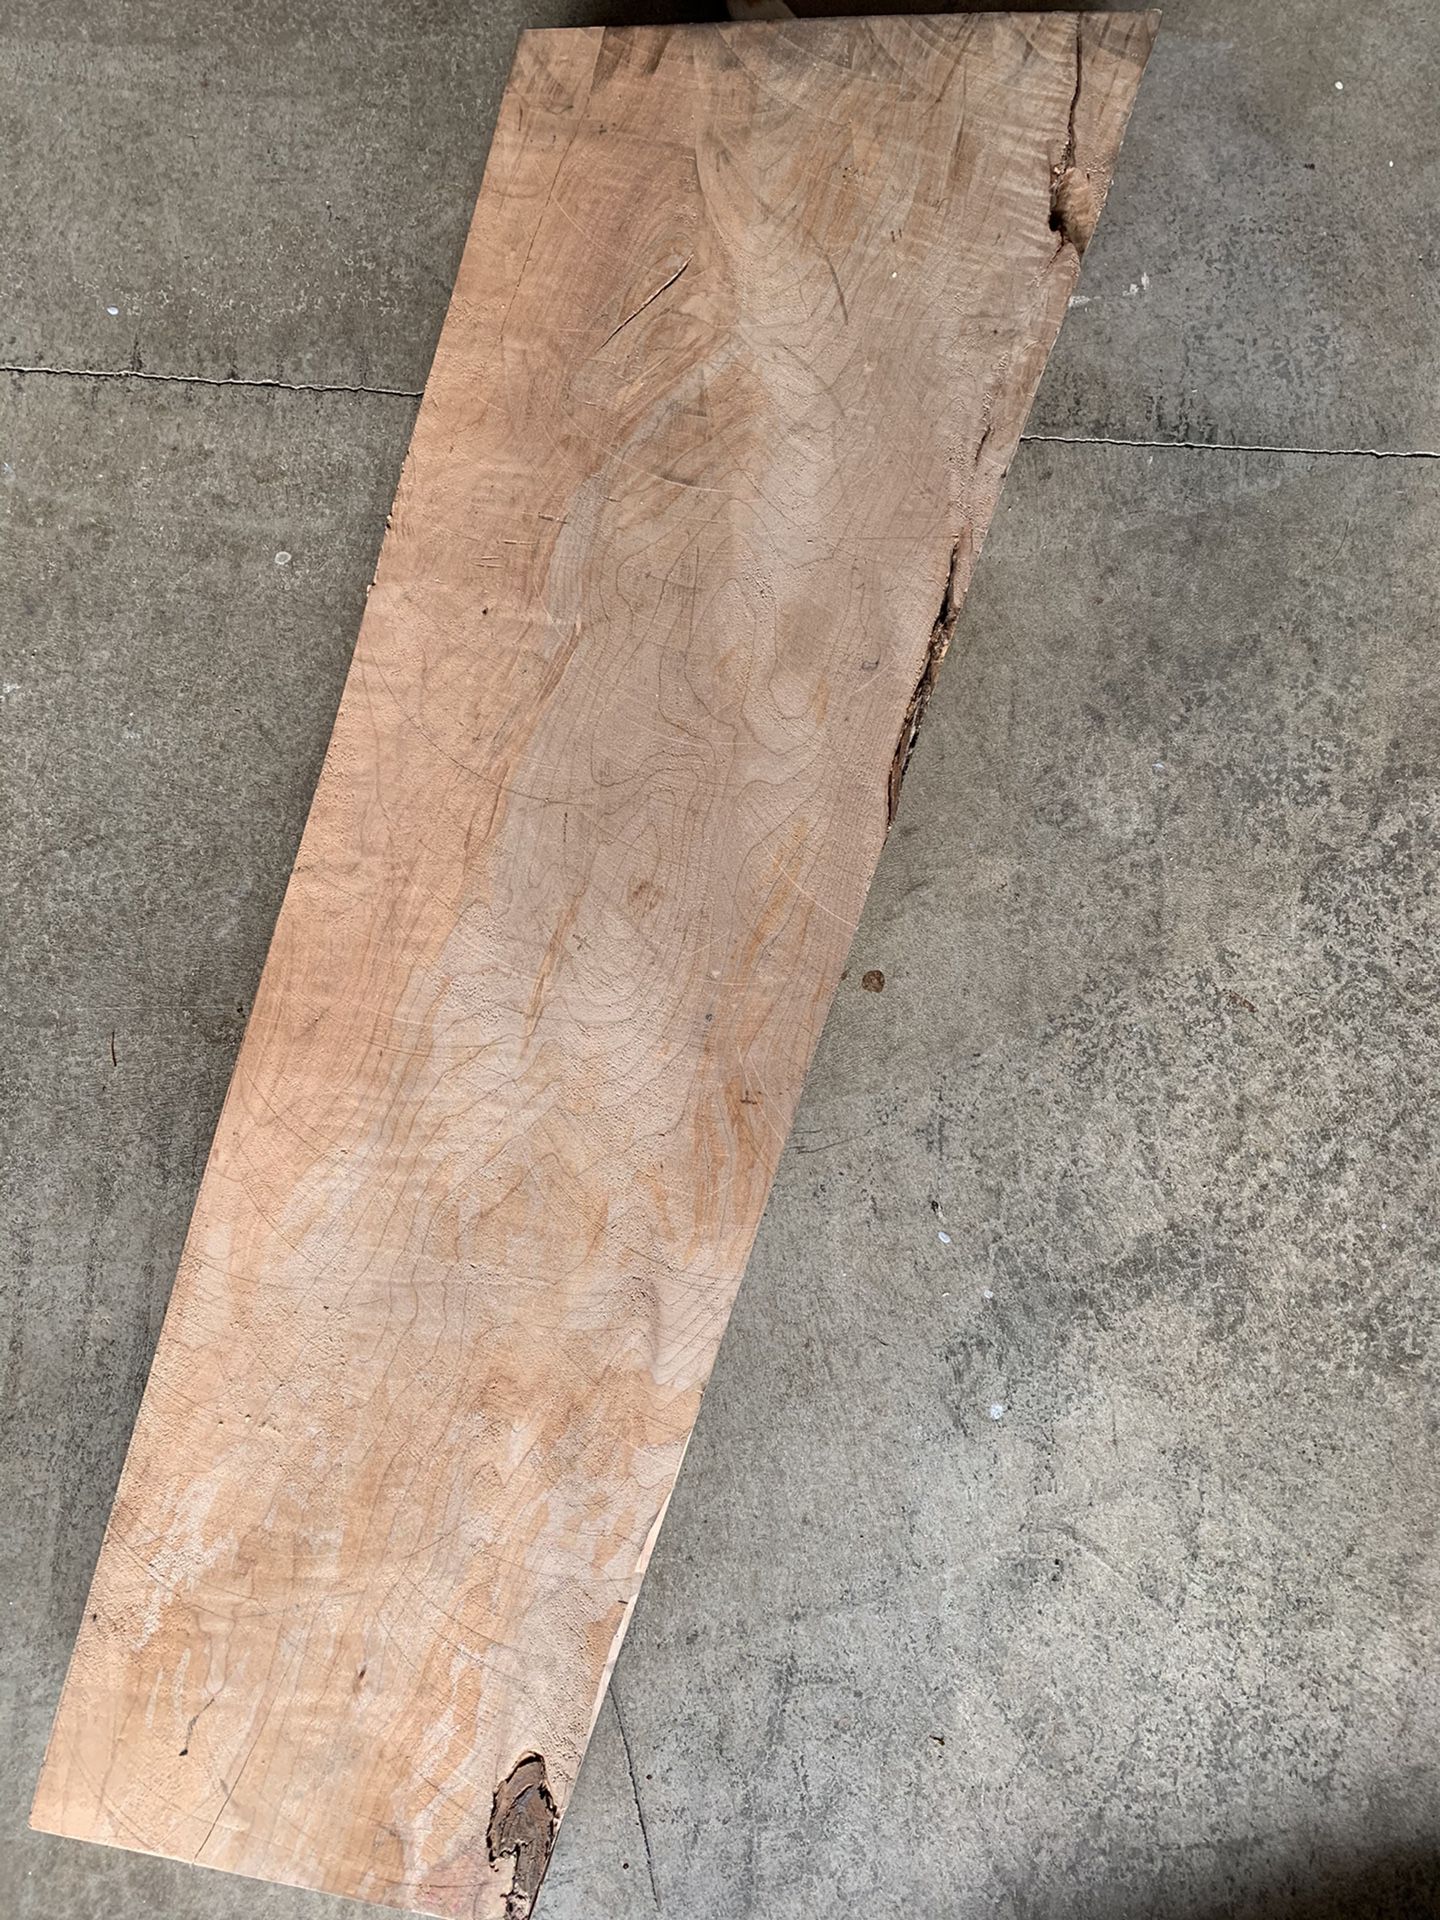 Maple wood slab